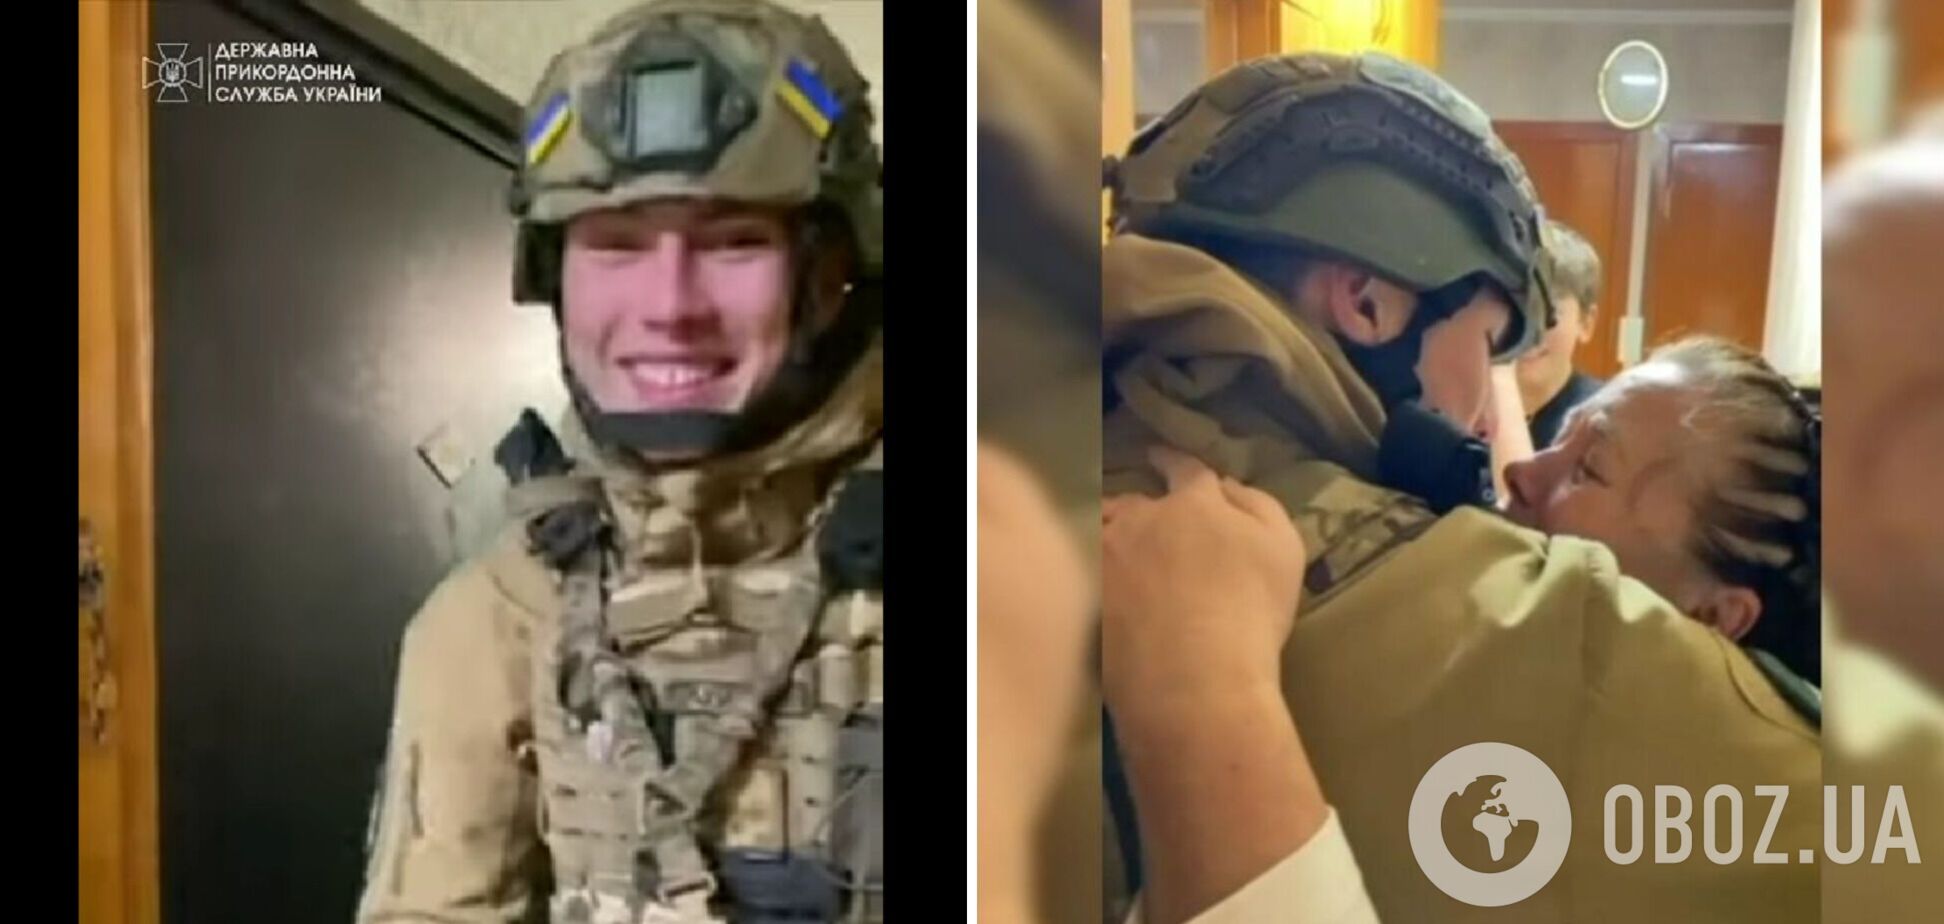 Подивіться на цю усмішку: з'явилося миле відео із захисником України, який повернувся додому